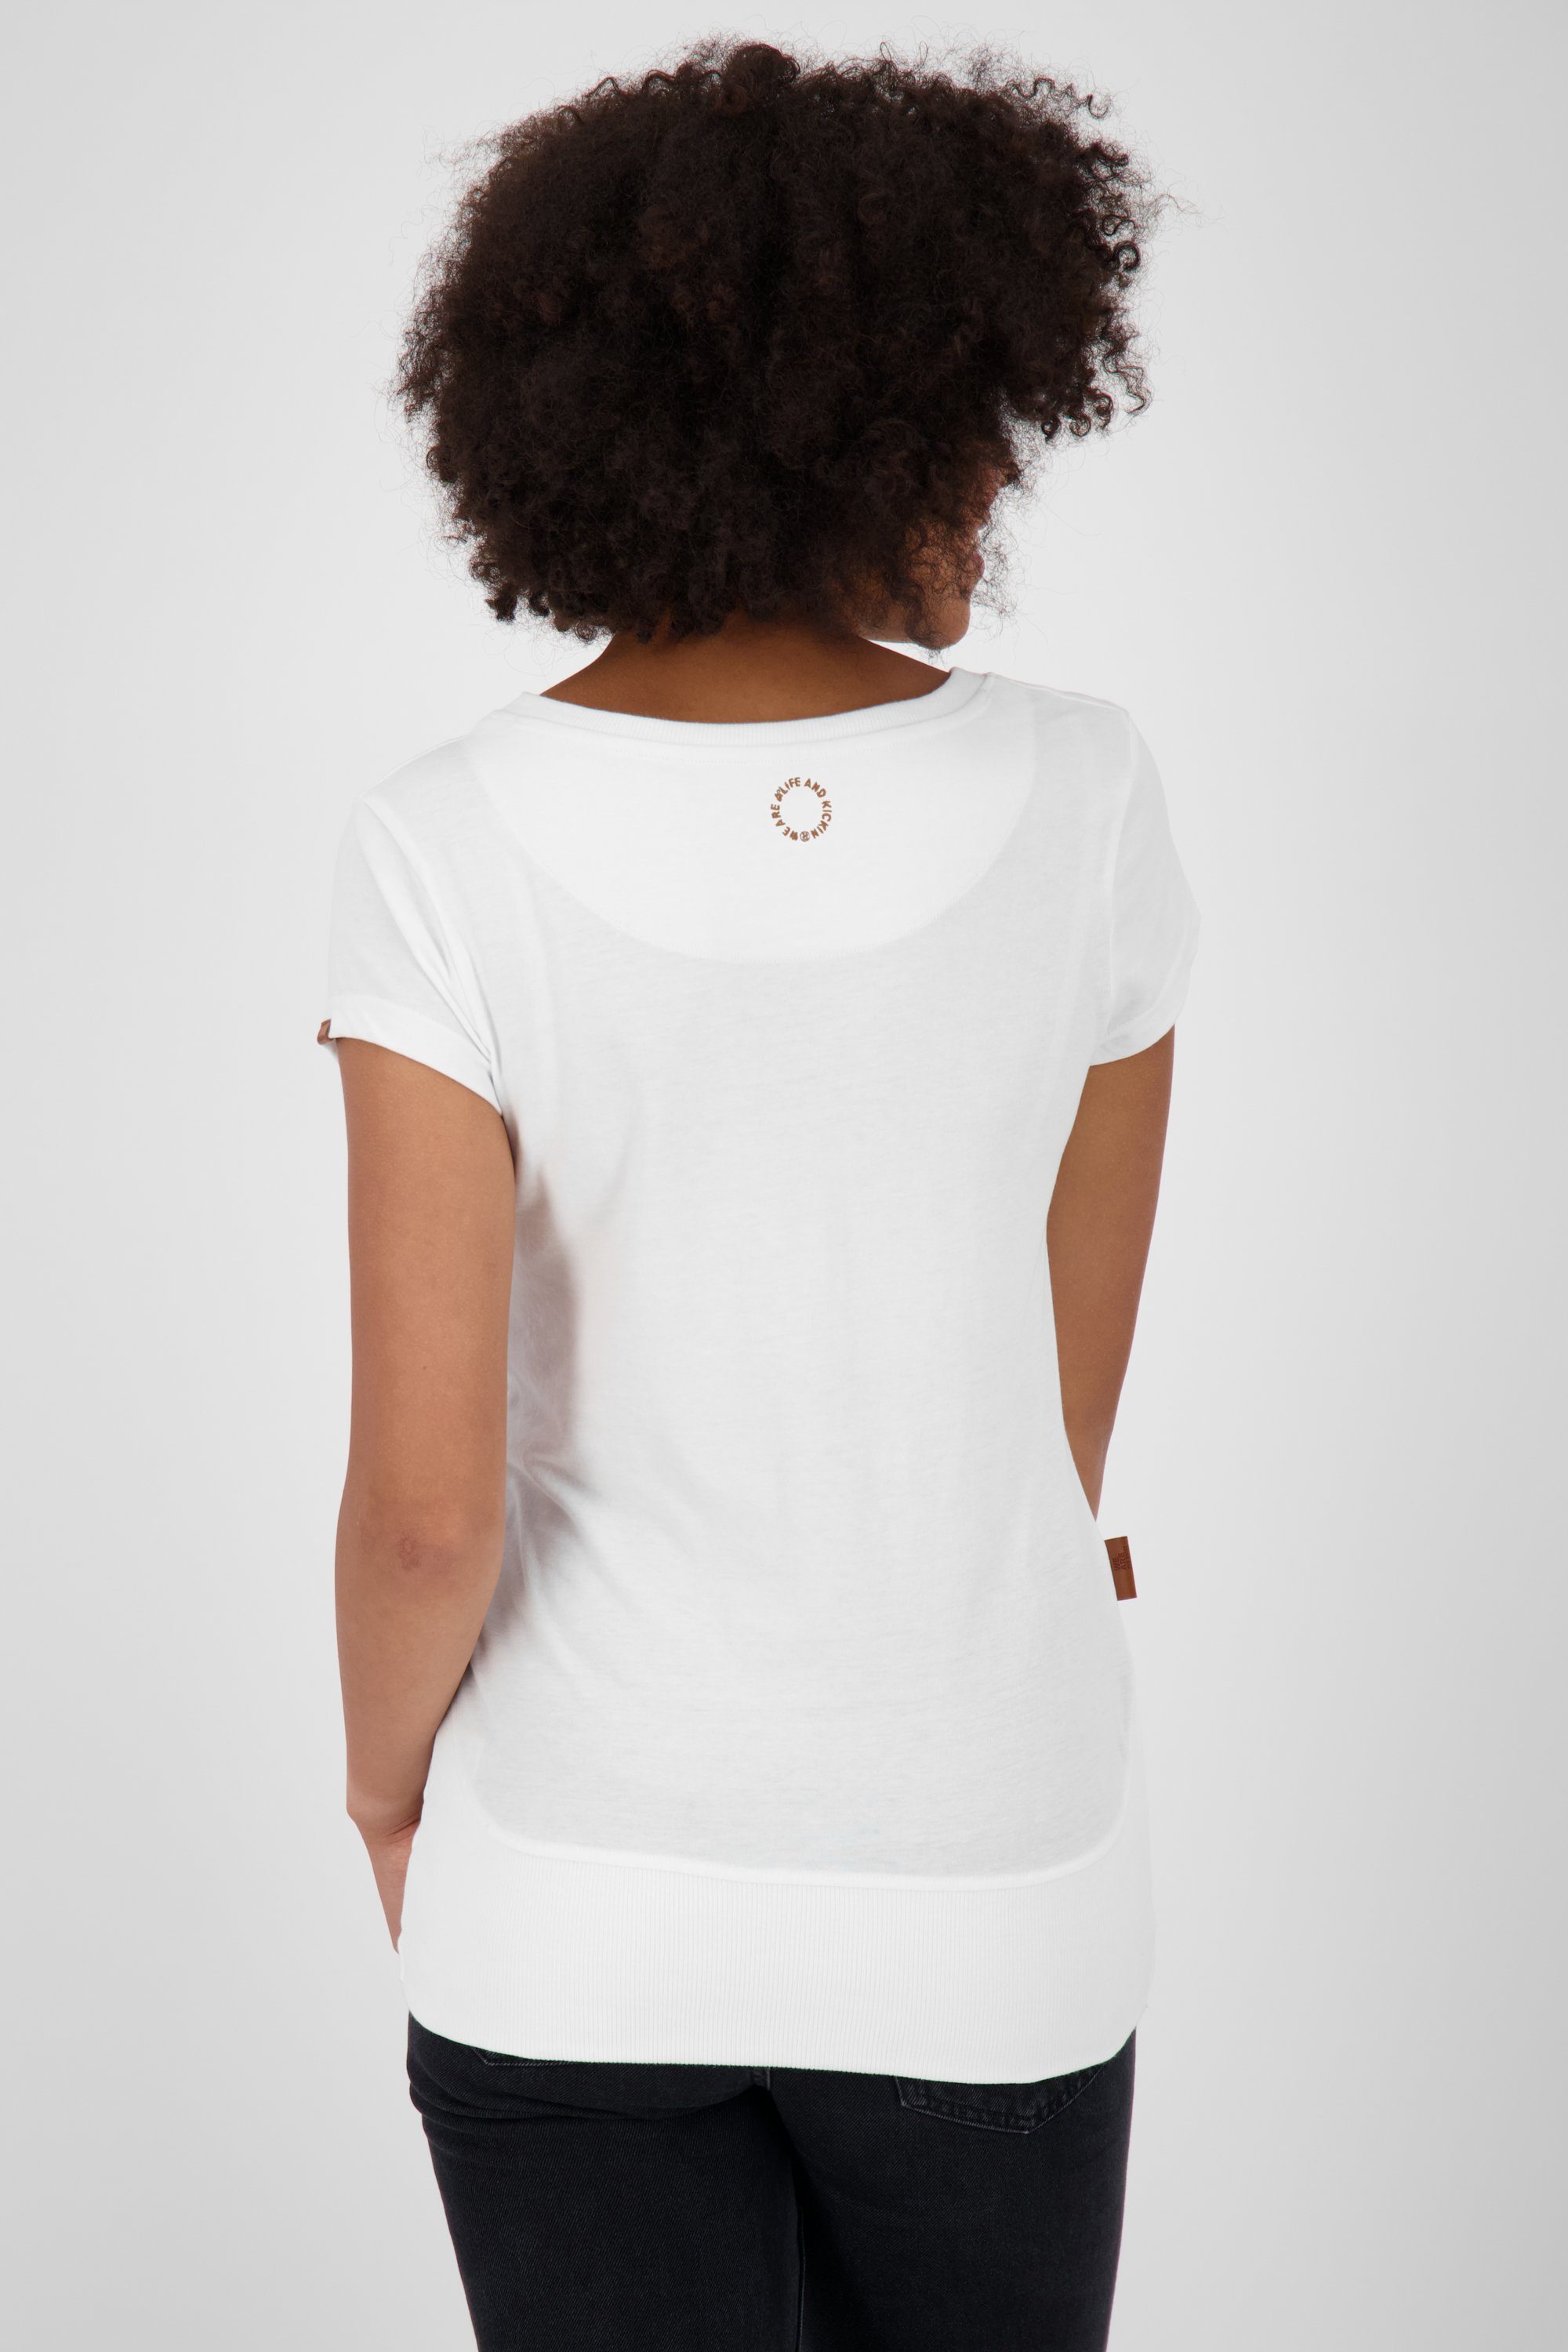 T-Shirt CocoAK Alife white Shirt T-Shirt A Kickin & Damen